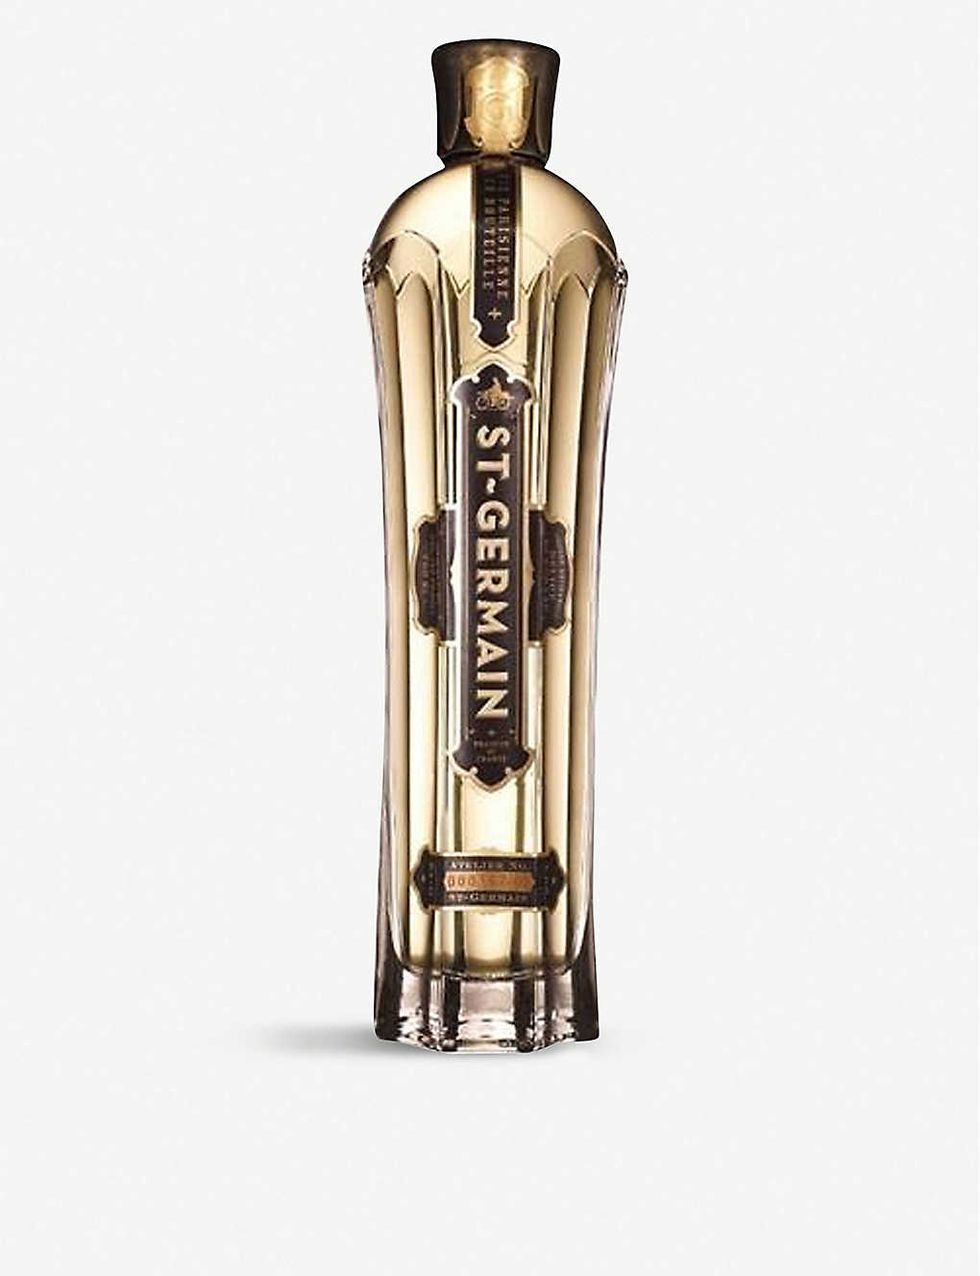 St Germain Elderflower liqueur 700ml